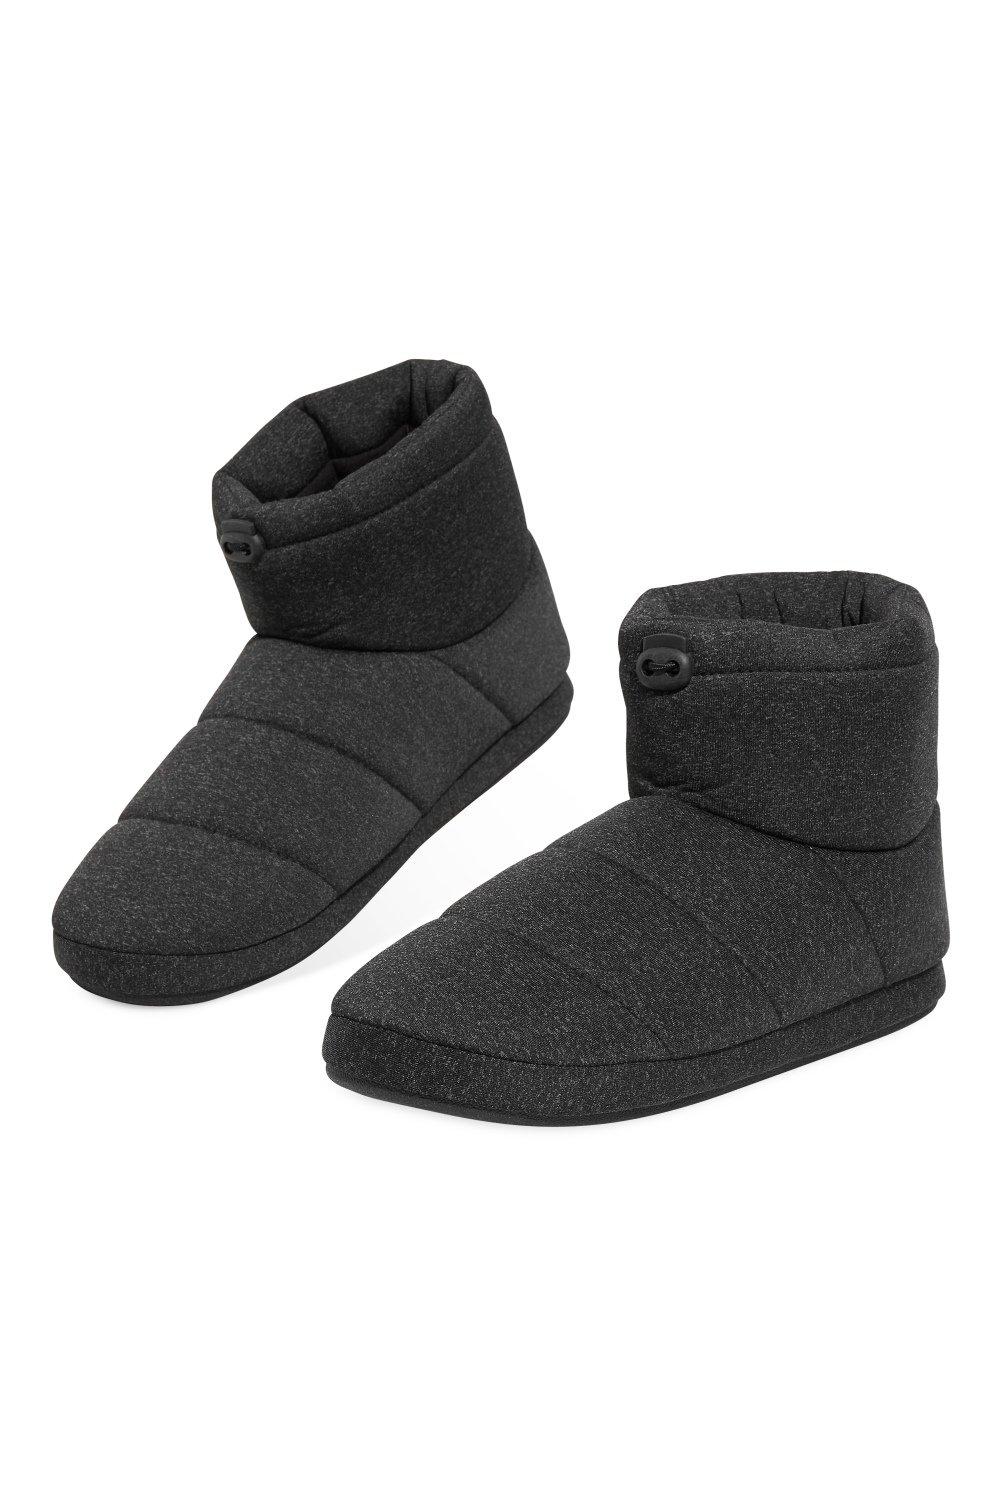 Тапочки-сапожки Dunlop, серый мужские пушистые тапочки домашние зимние разноцветные противоскользящие плюшевые мягкие удобные мужские повседневные домашние туфли на